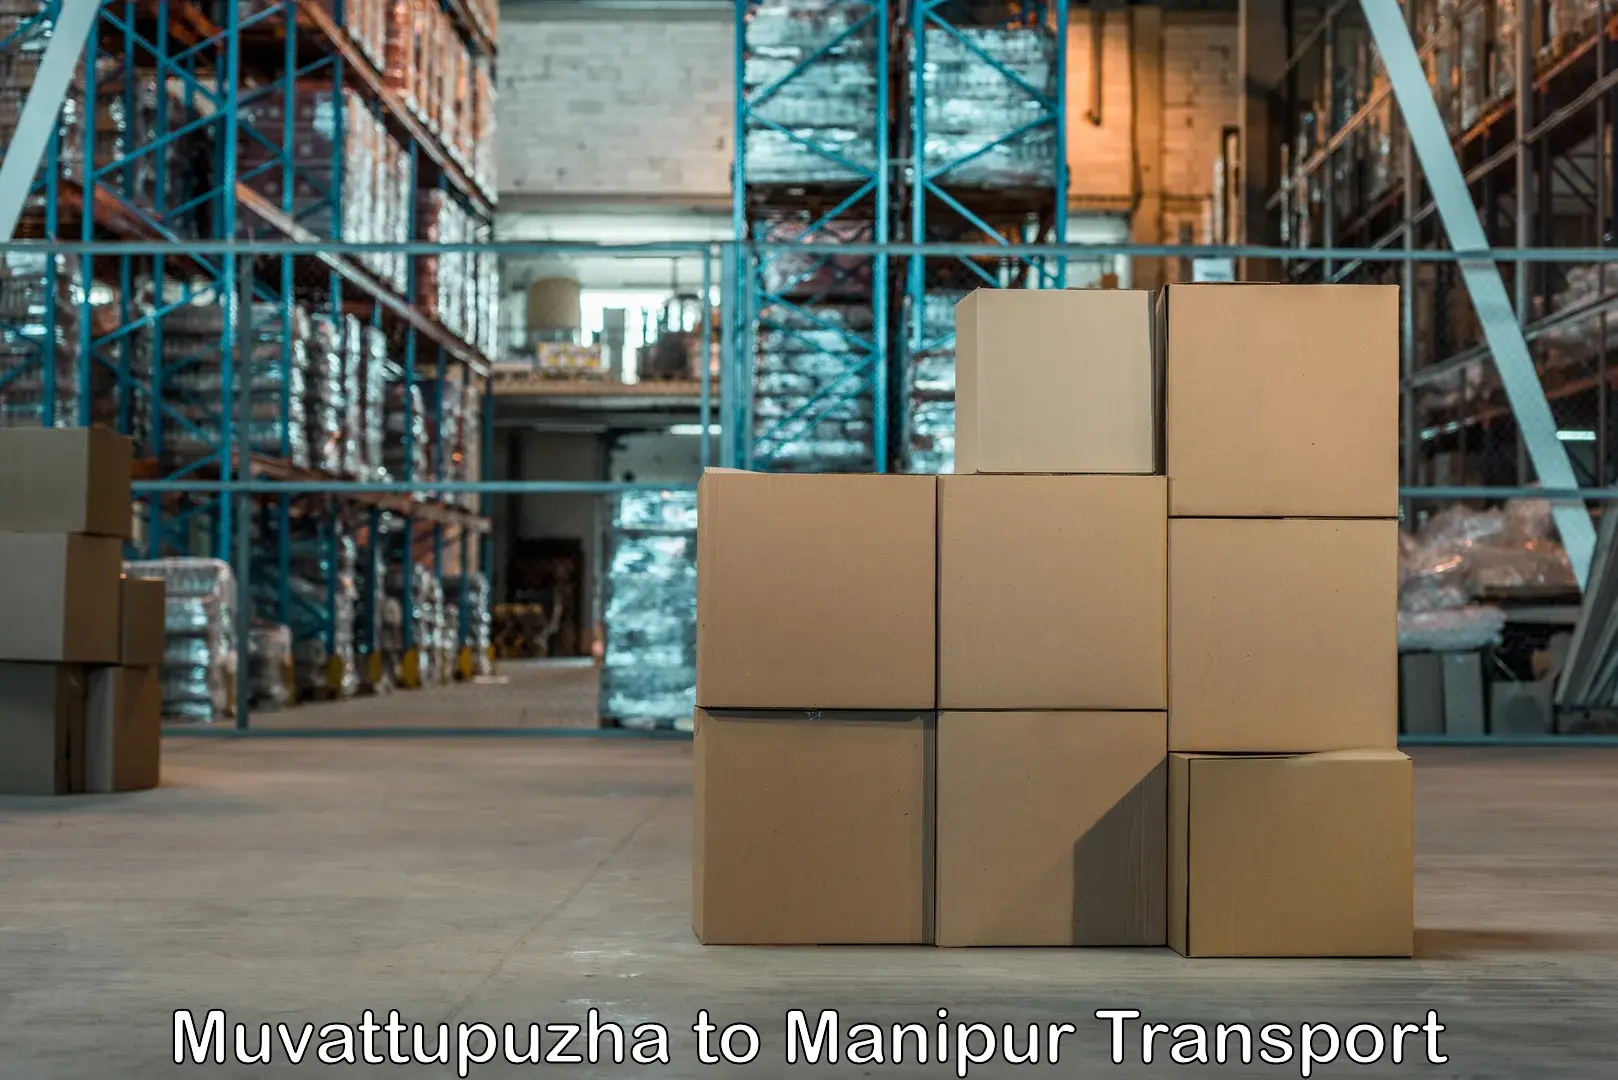 Online transport service Muvattupuzha to Manipur